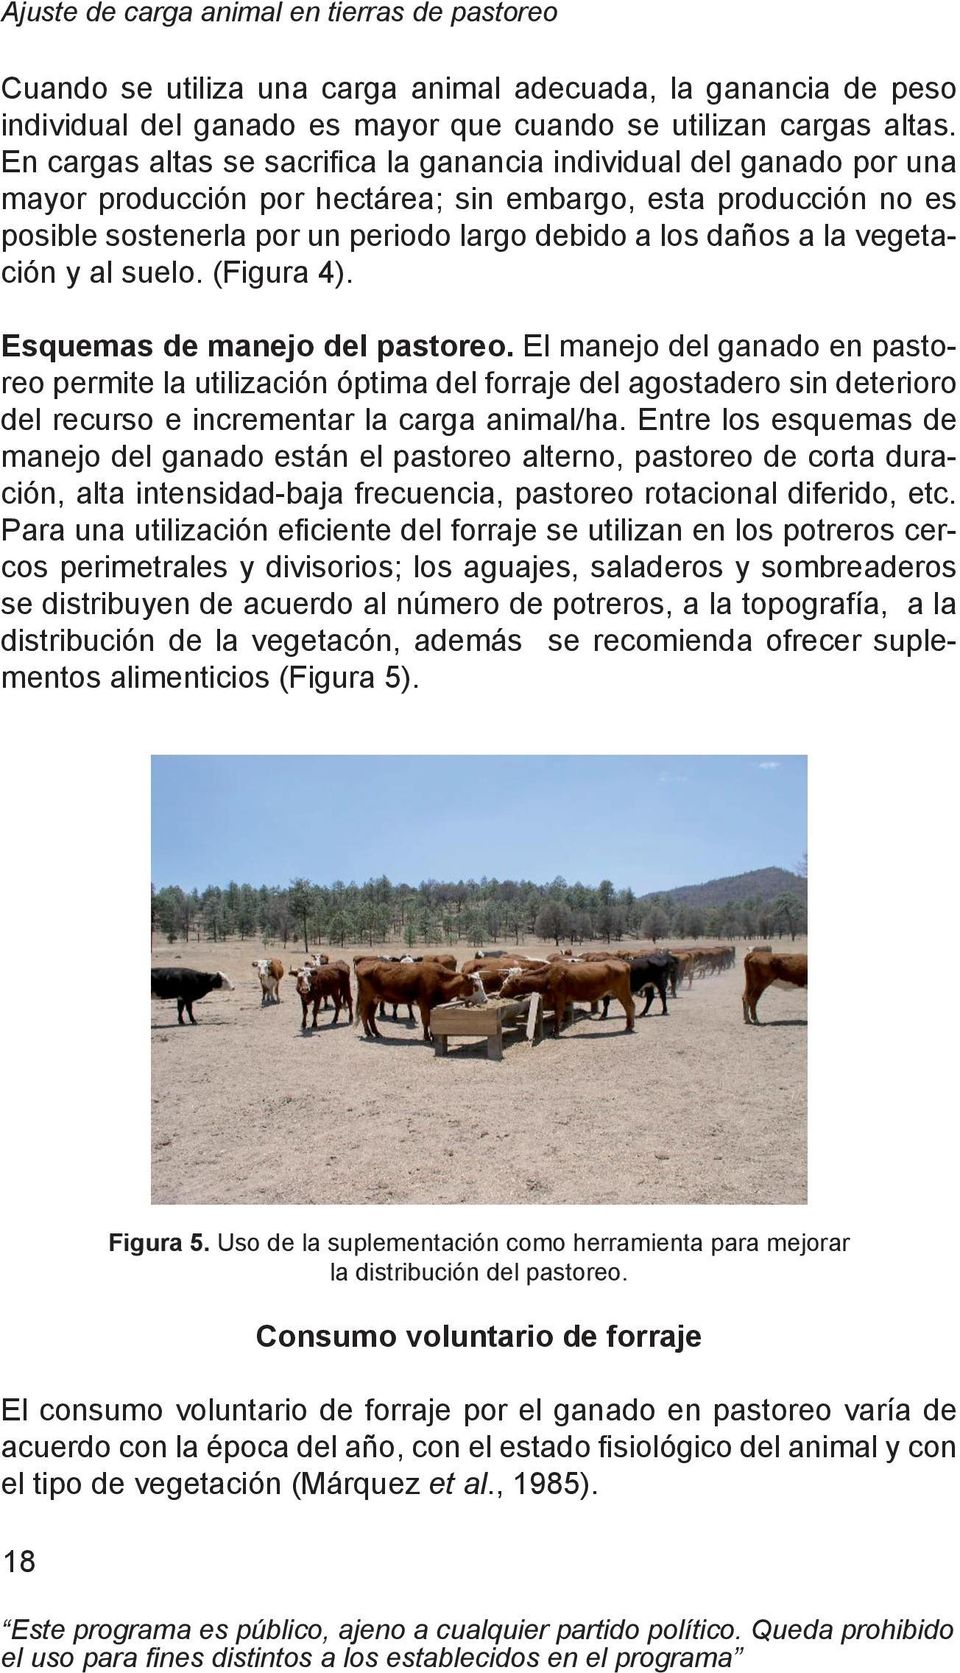 Ajuste de carga animal en tierras de pastoreo. Manual de capacitación - PDF  Descargar libre